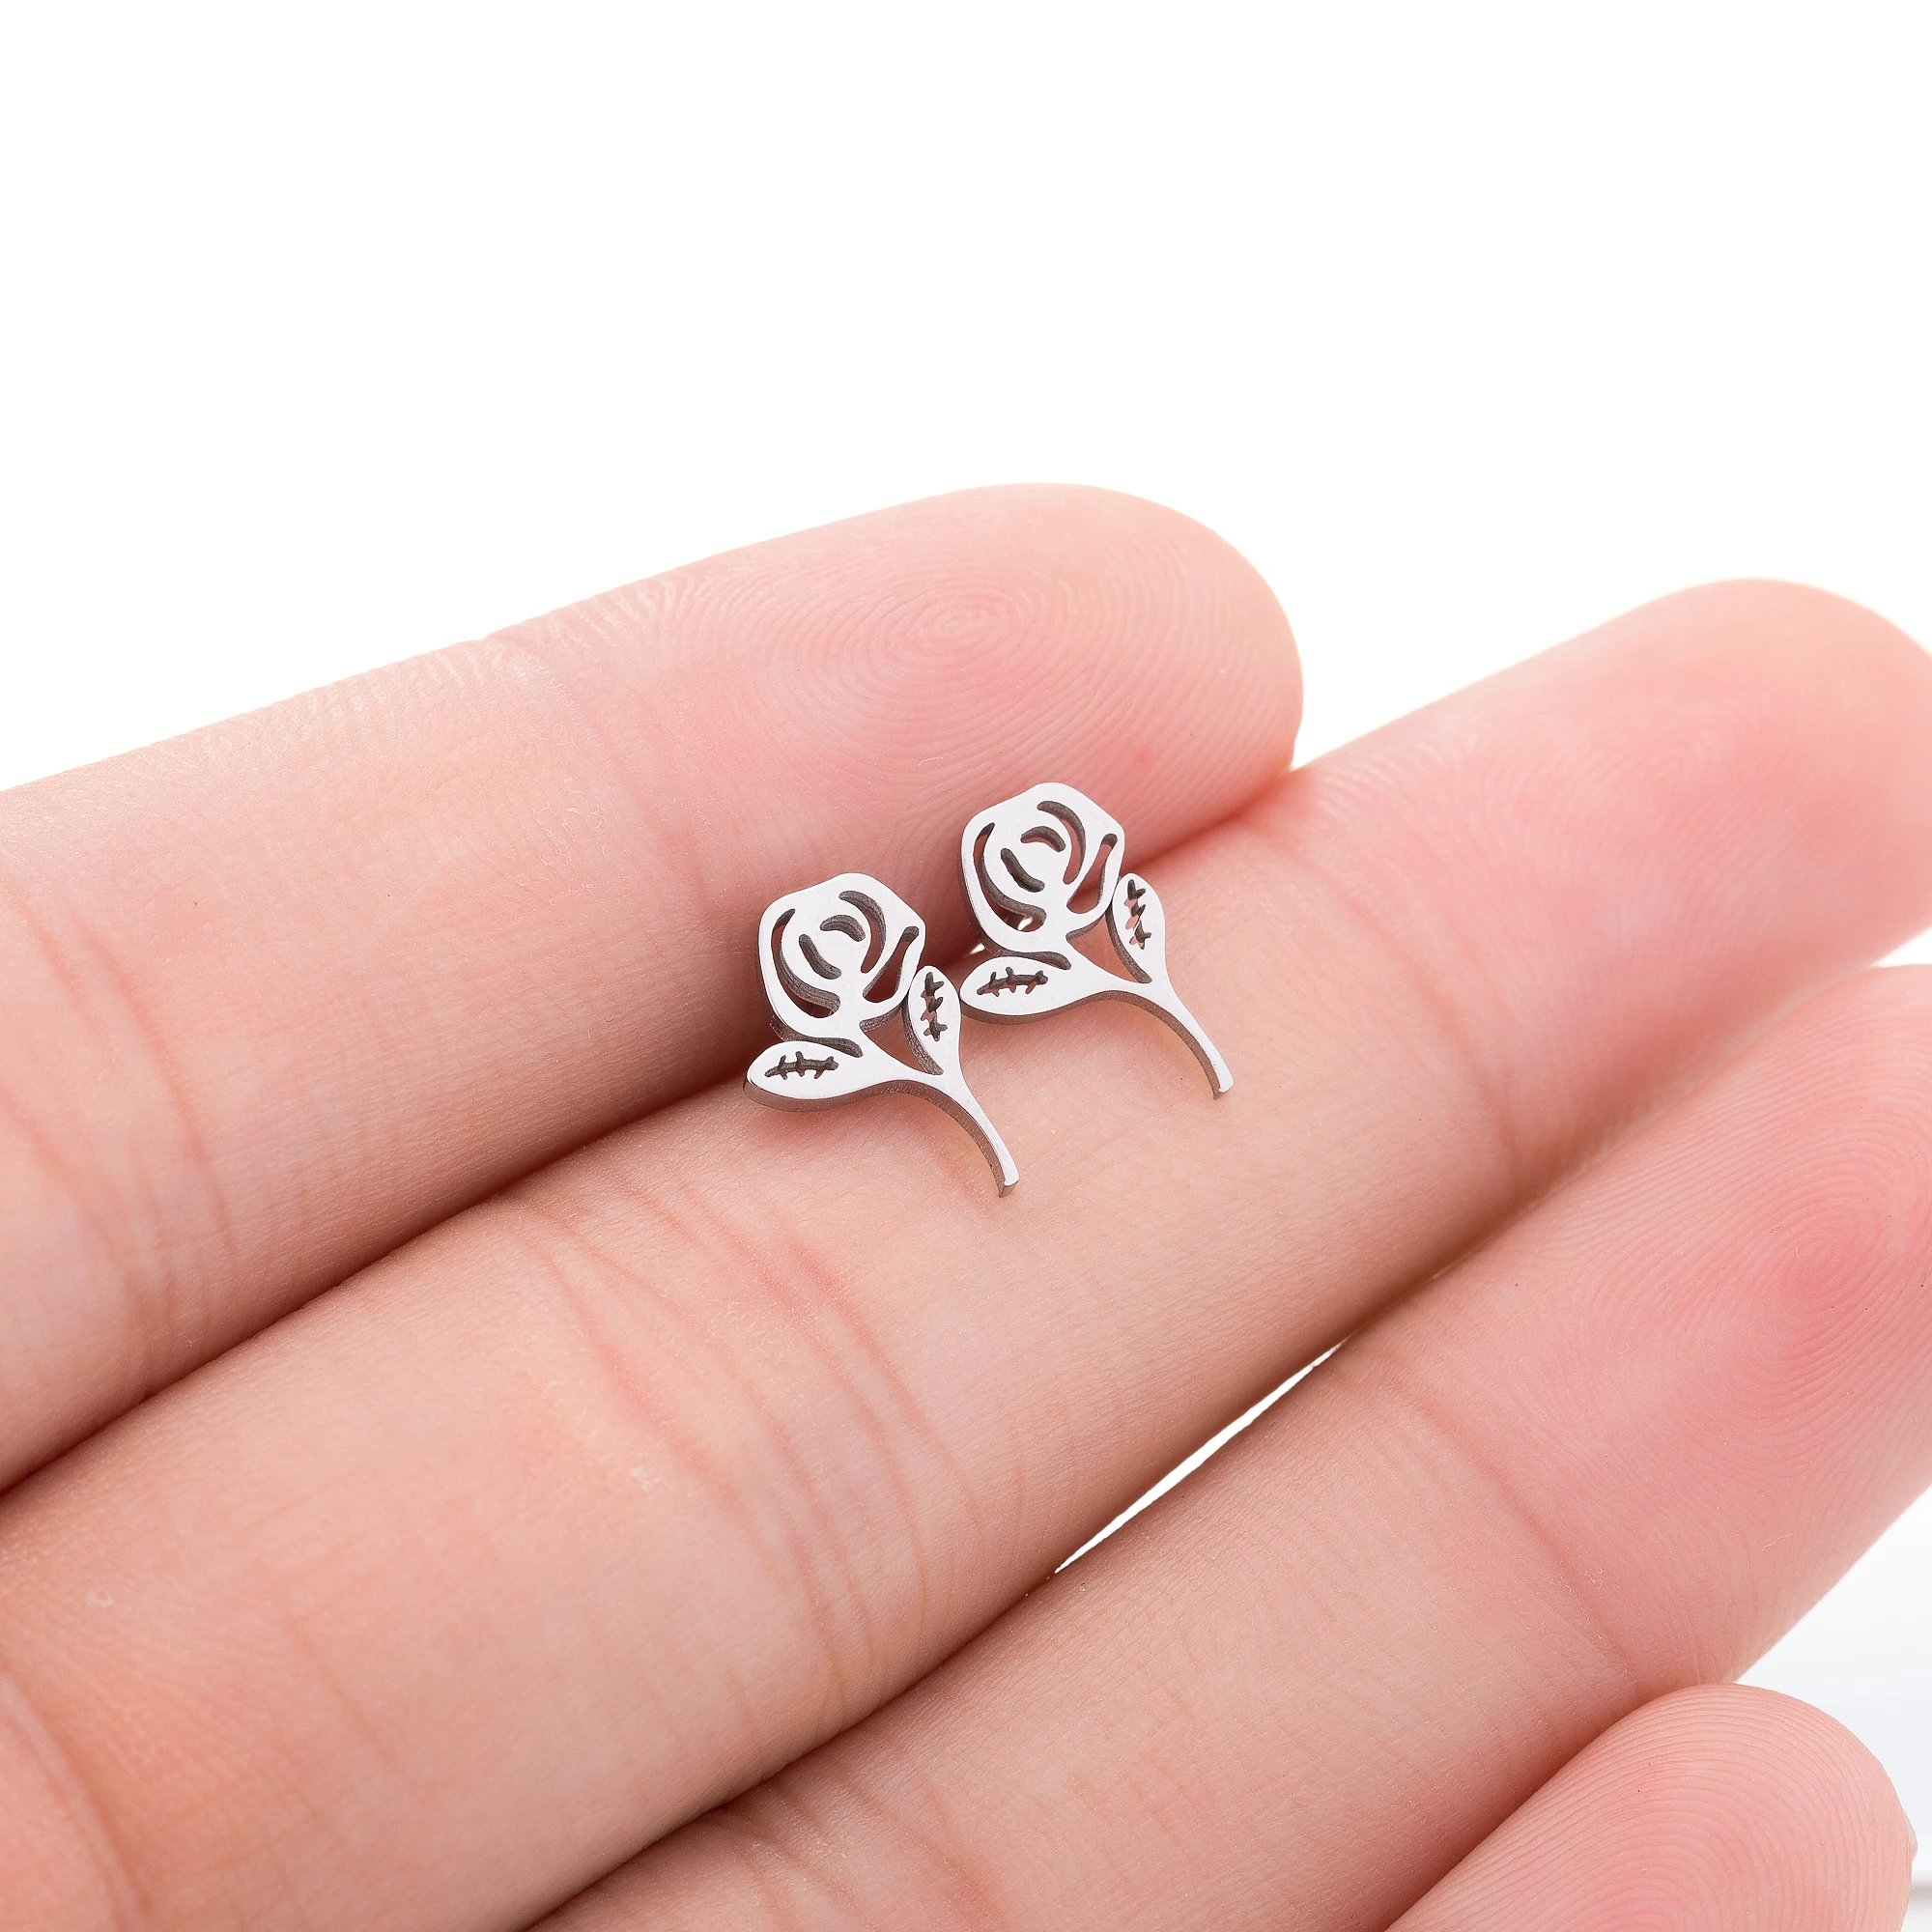 

Korea Design 11mm Cheap Stainless Steel Rose Flower Stud Earring Ear Studs Packing Tiny Earrings